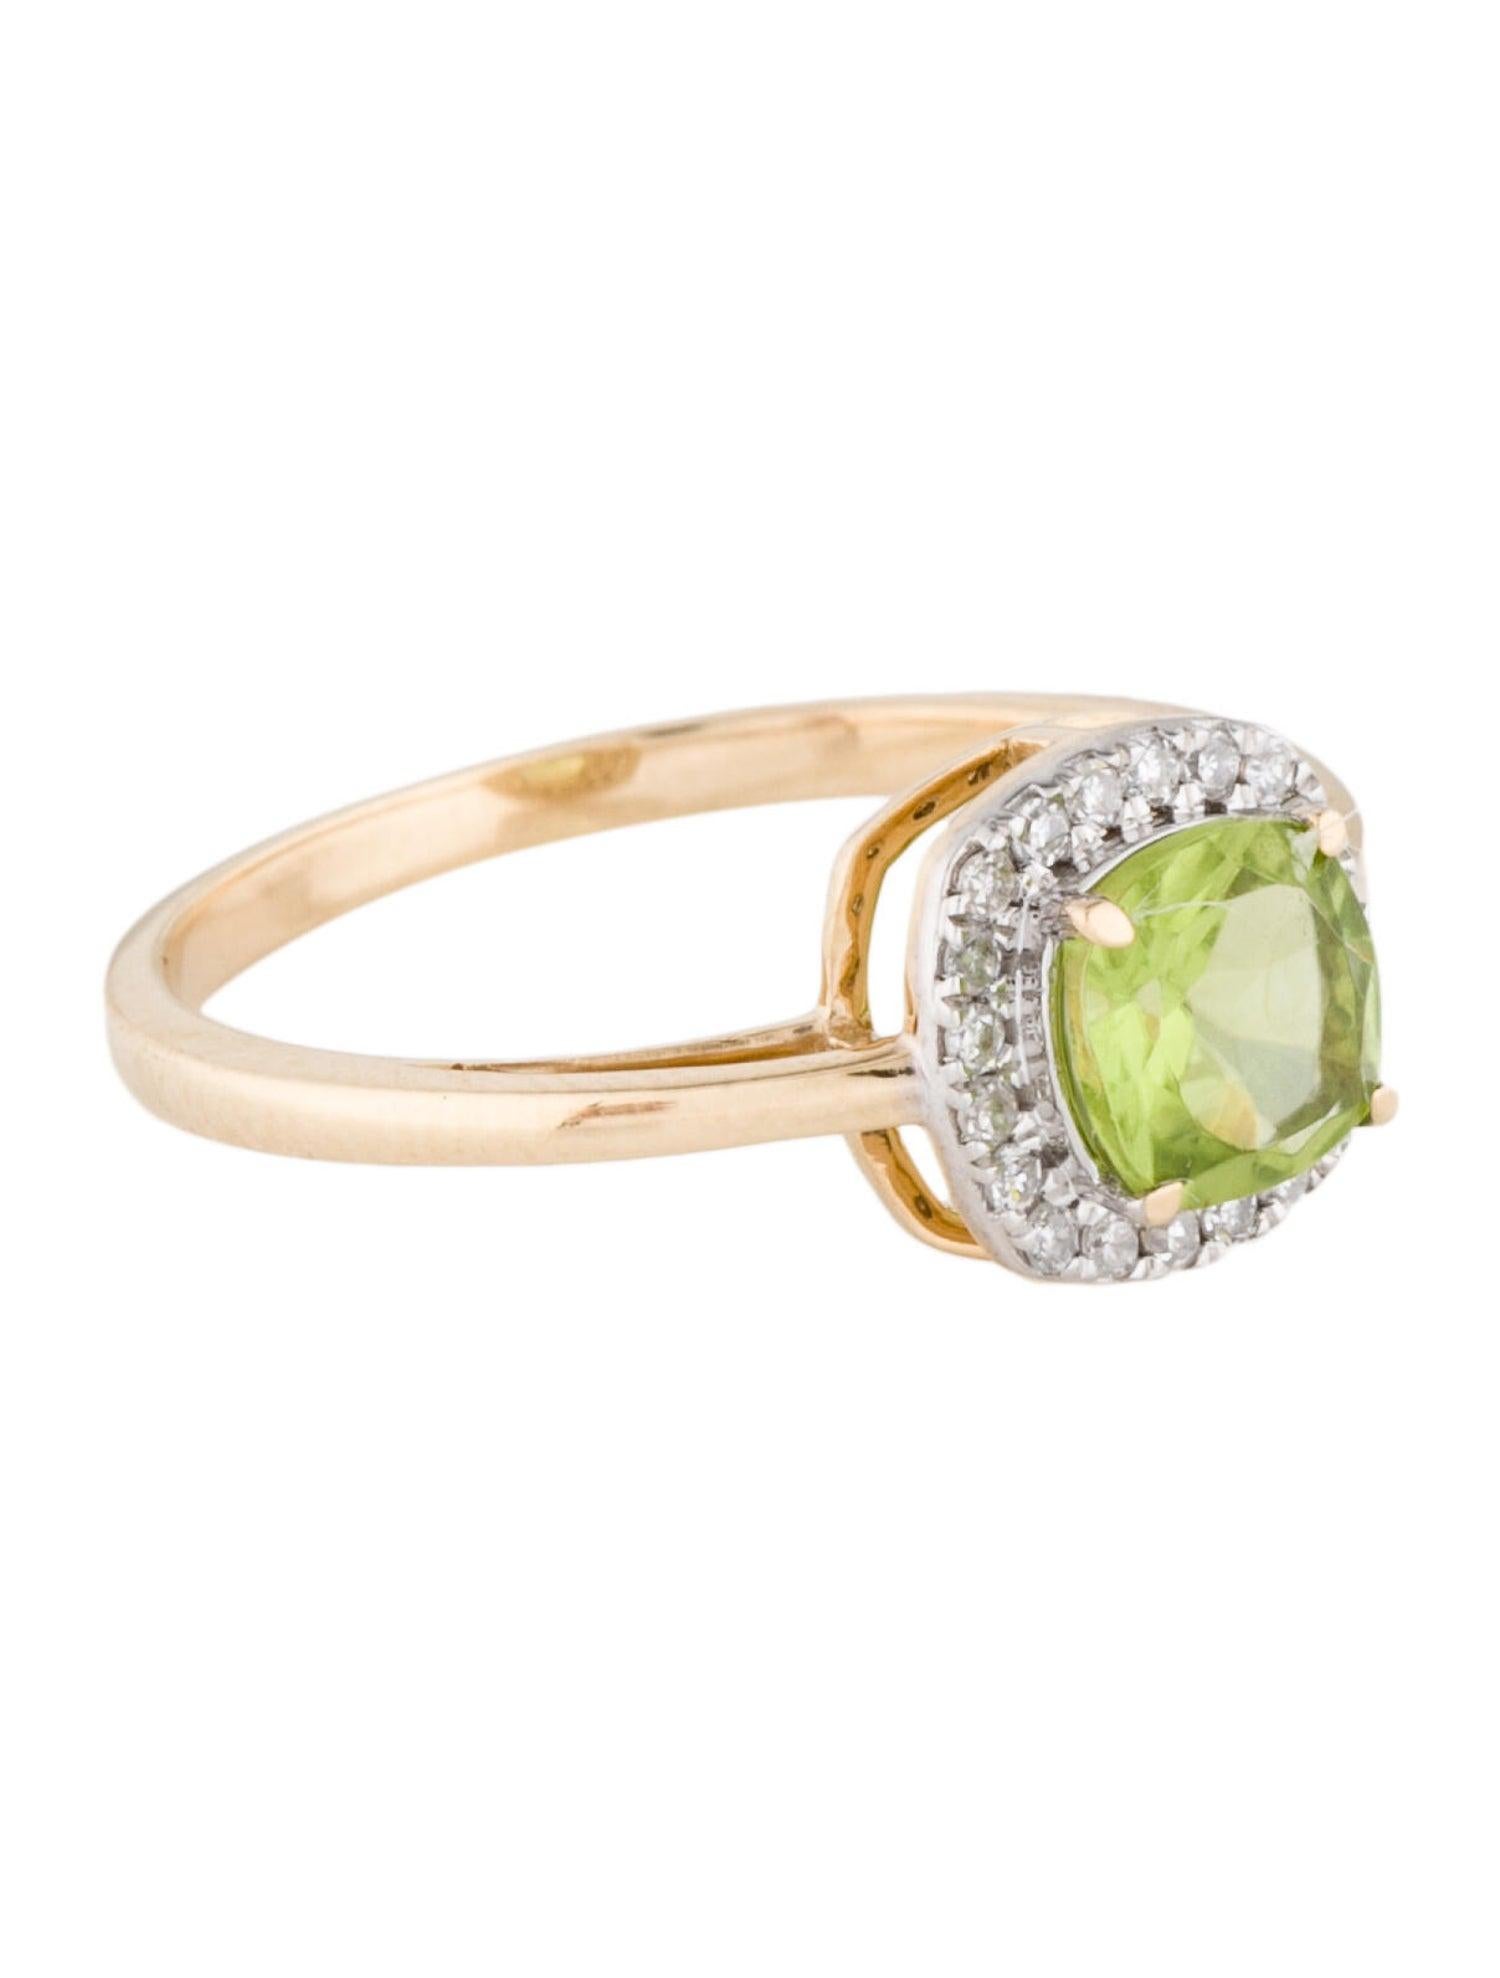 Erhöhen Sie Ihren Stil mit der exquisiten Harmony in Green Collection'S von Jeweltique. Dieser atemberaubende Ring aus 14 Karat Gelbgold ist ein wahres Zeugnis für die zeitlose Schönheit der Schätze der Natur. Sein Herzstück ist ein prächtiger